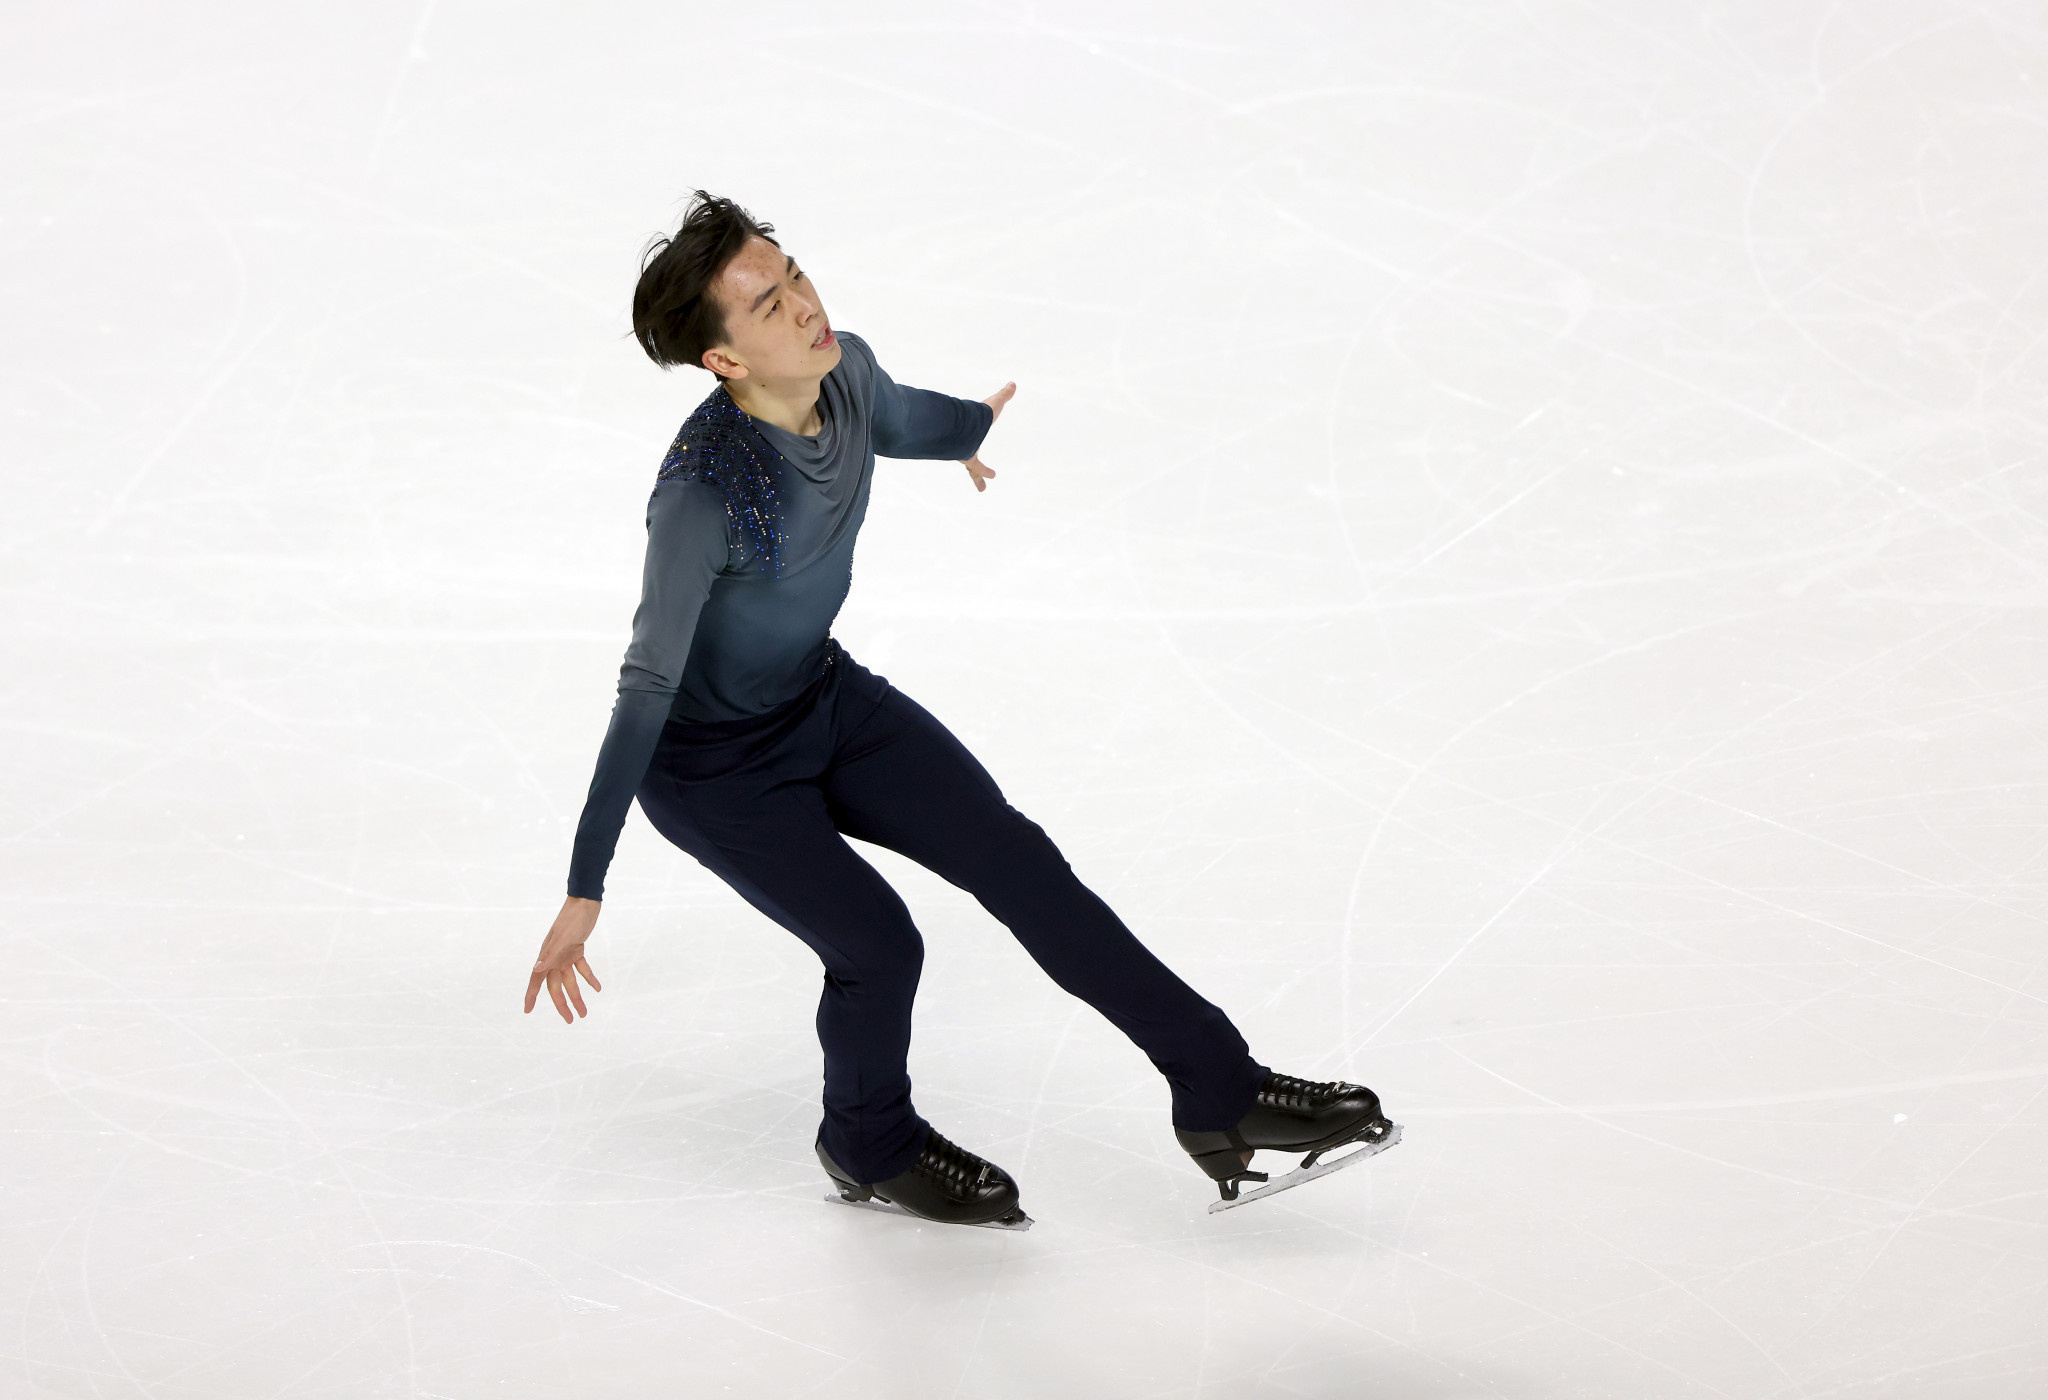 Vincent Zhou, Beijing 2022 medal hopeful, Competitive figure skater, Podium aspirations, 2050x1400 HD Desktop